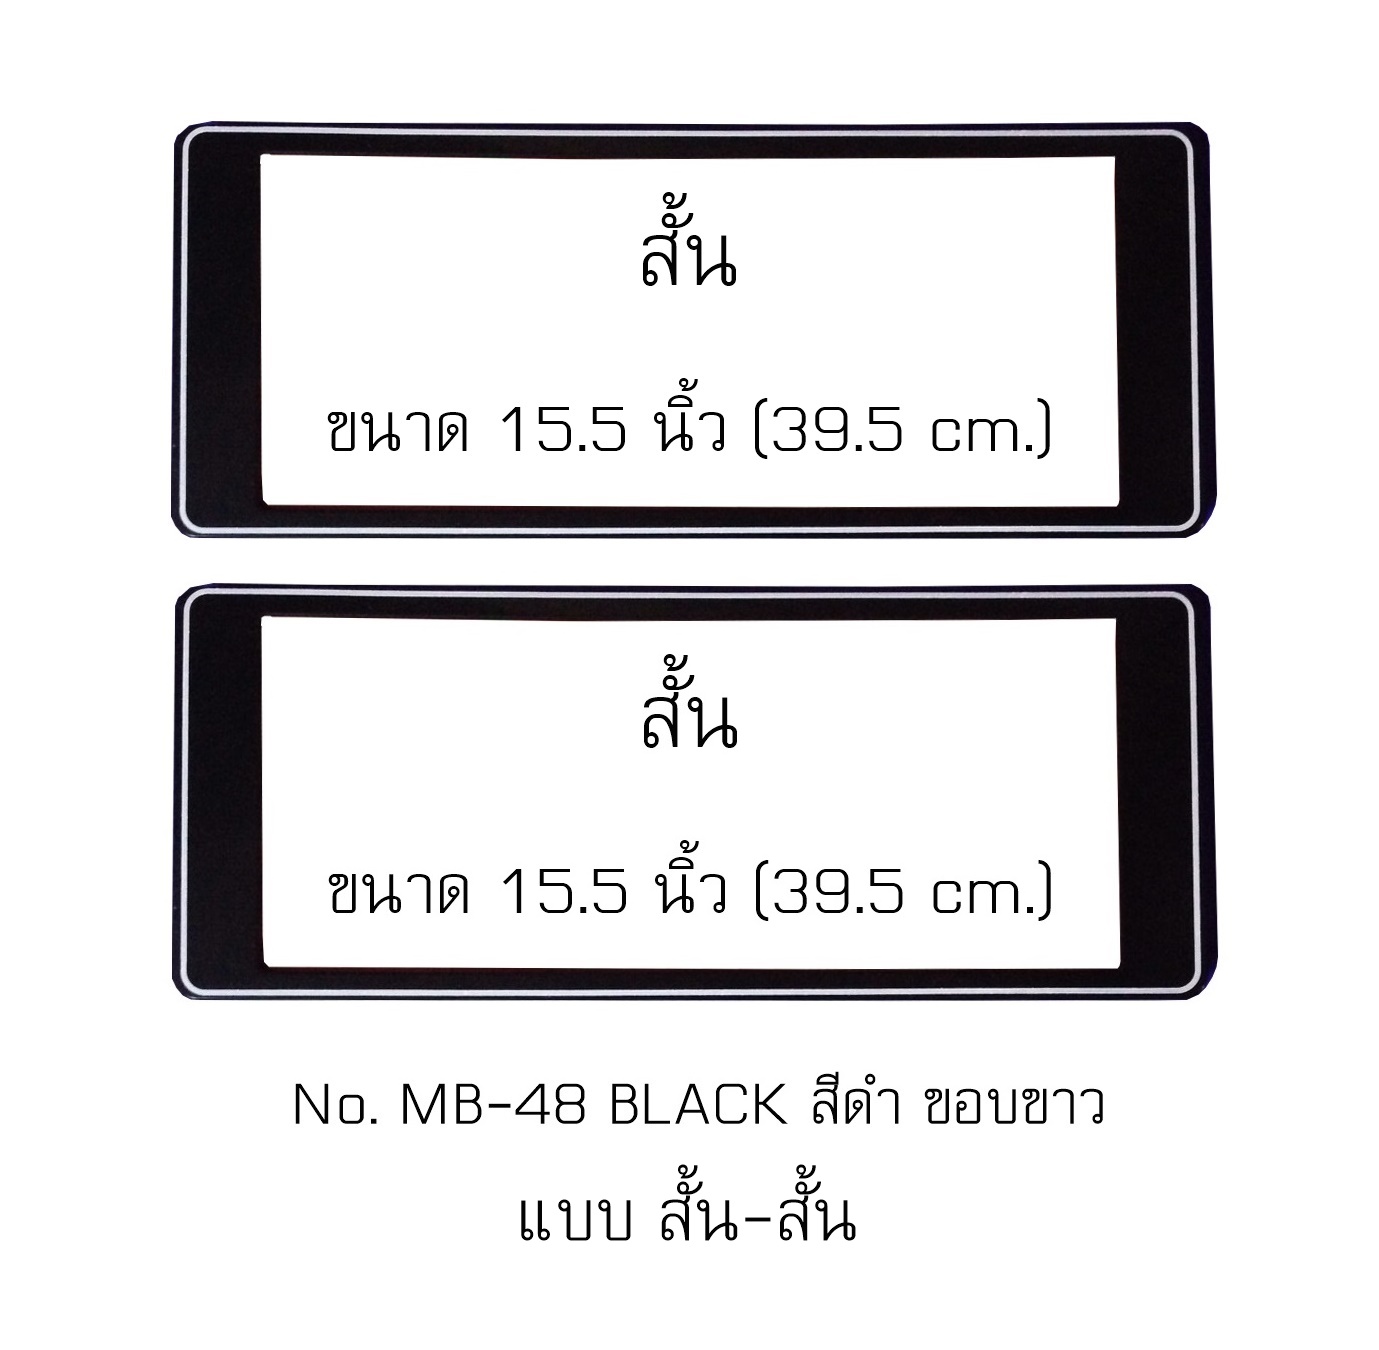 กรอบป้ายทะเบียนกันน้ำ MB-48 สีดำ ขอบขาว สั้น-สั้น ไม่มีเส้นกลาง ระบบคลิปล็อค 8 จุด พร้อมน็อตอะไหล่